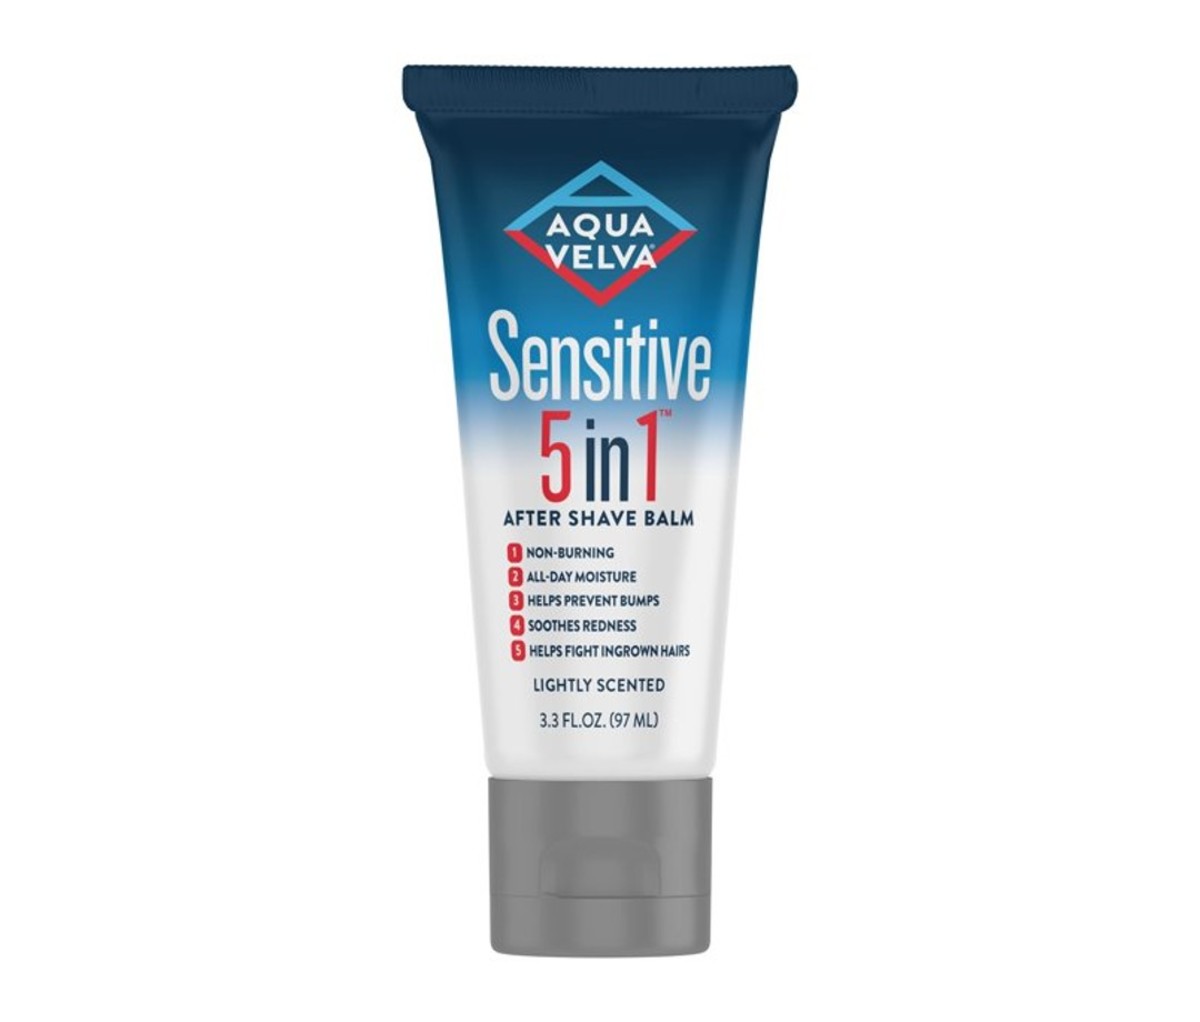 Aqua Velva’s Sensitive 5-in-1 After Shave Balm